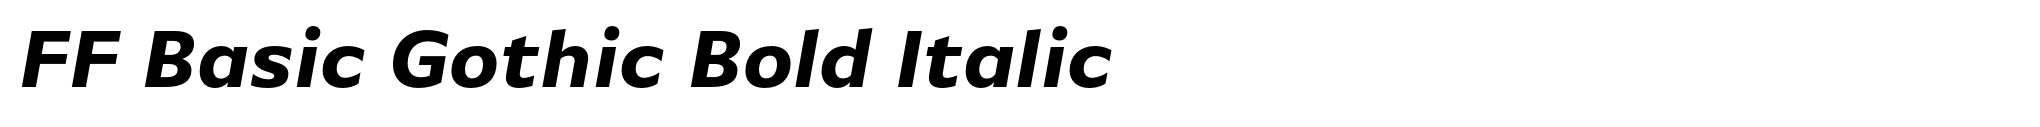 FF Basic Gothic Bold Italic image